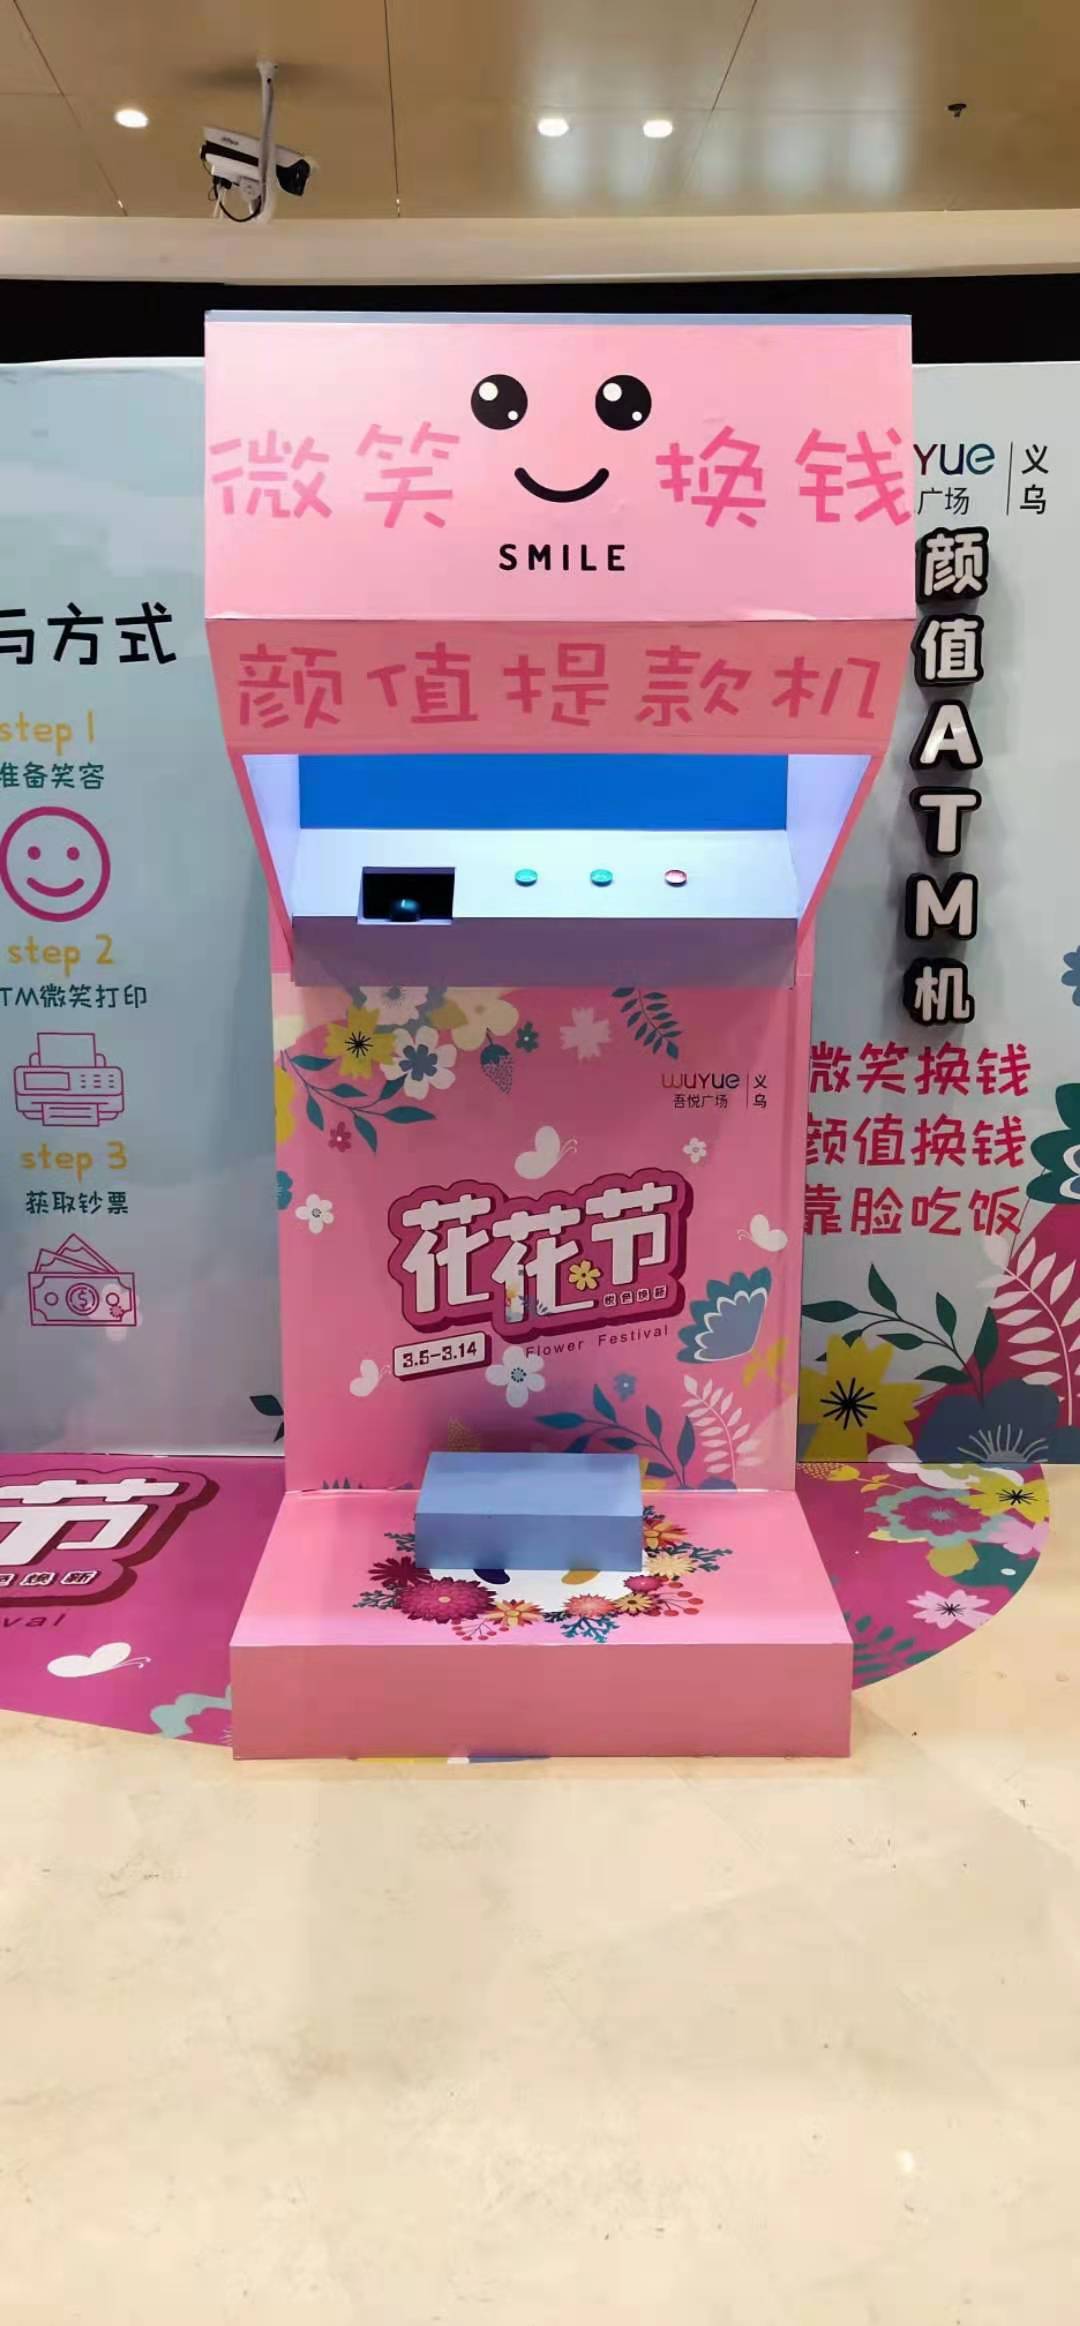 上海网红道具微信打印机道具出租扭蛋机vr机器充气投篮机出租大力锤出租